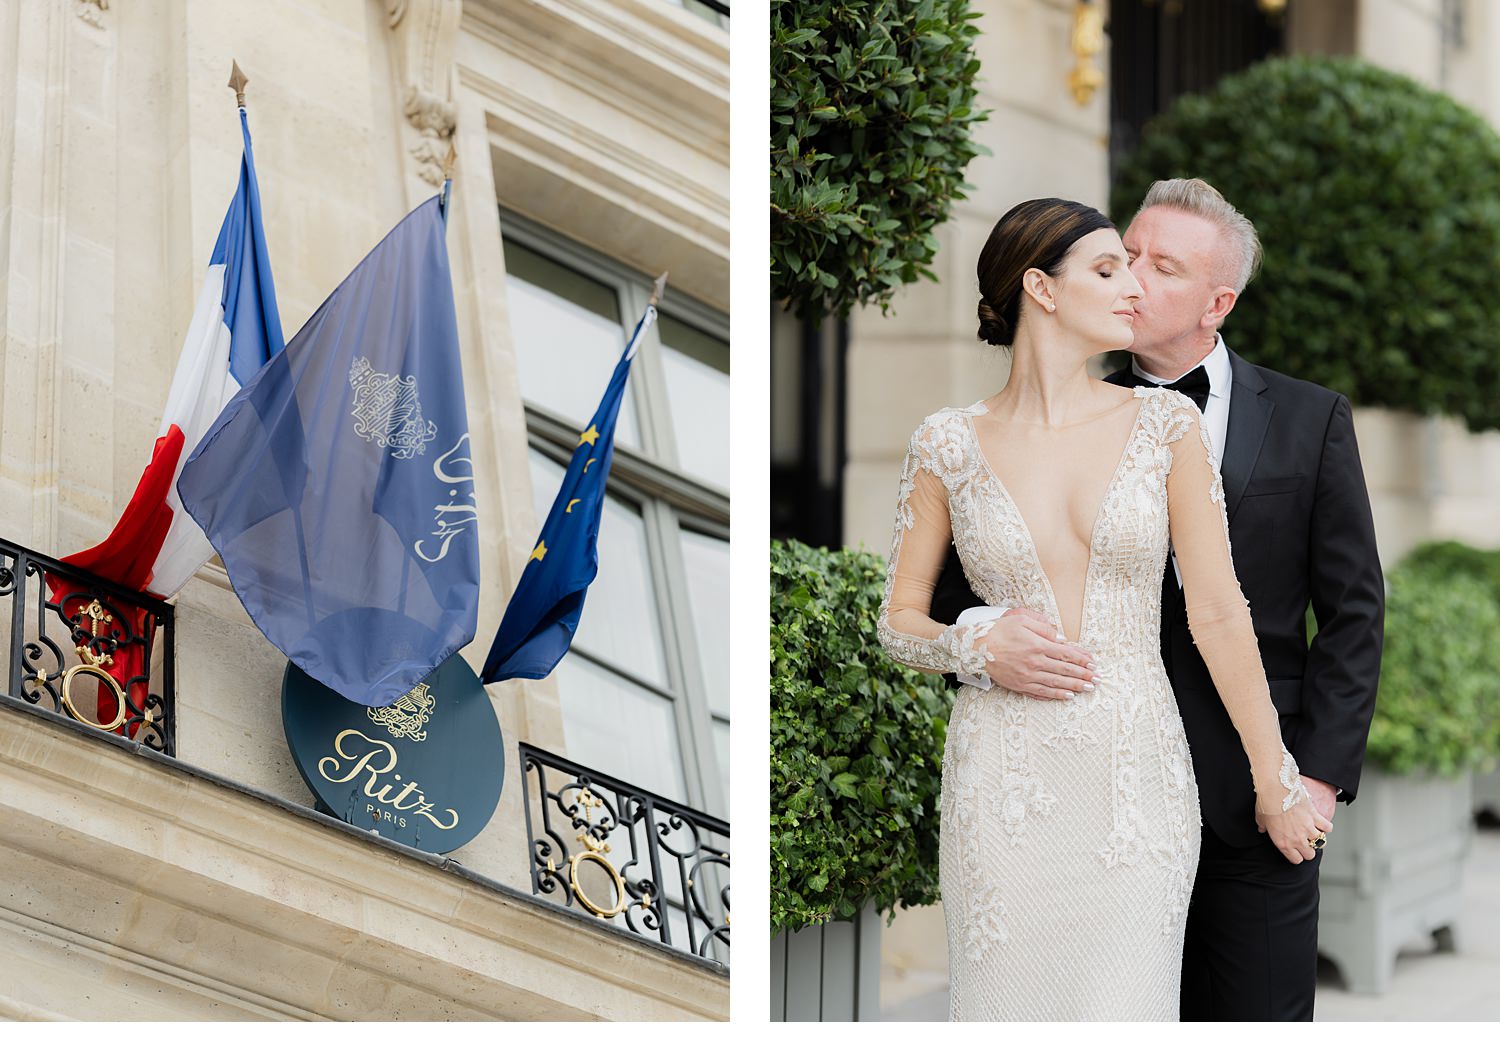 Elopement at the Ritz in Paris, Ritz Paris, Paris elopement, Elope in Paris, Elopement photographer in Paris